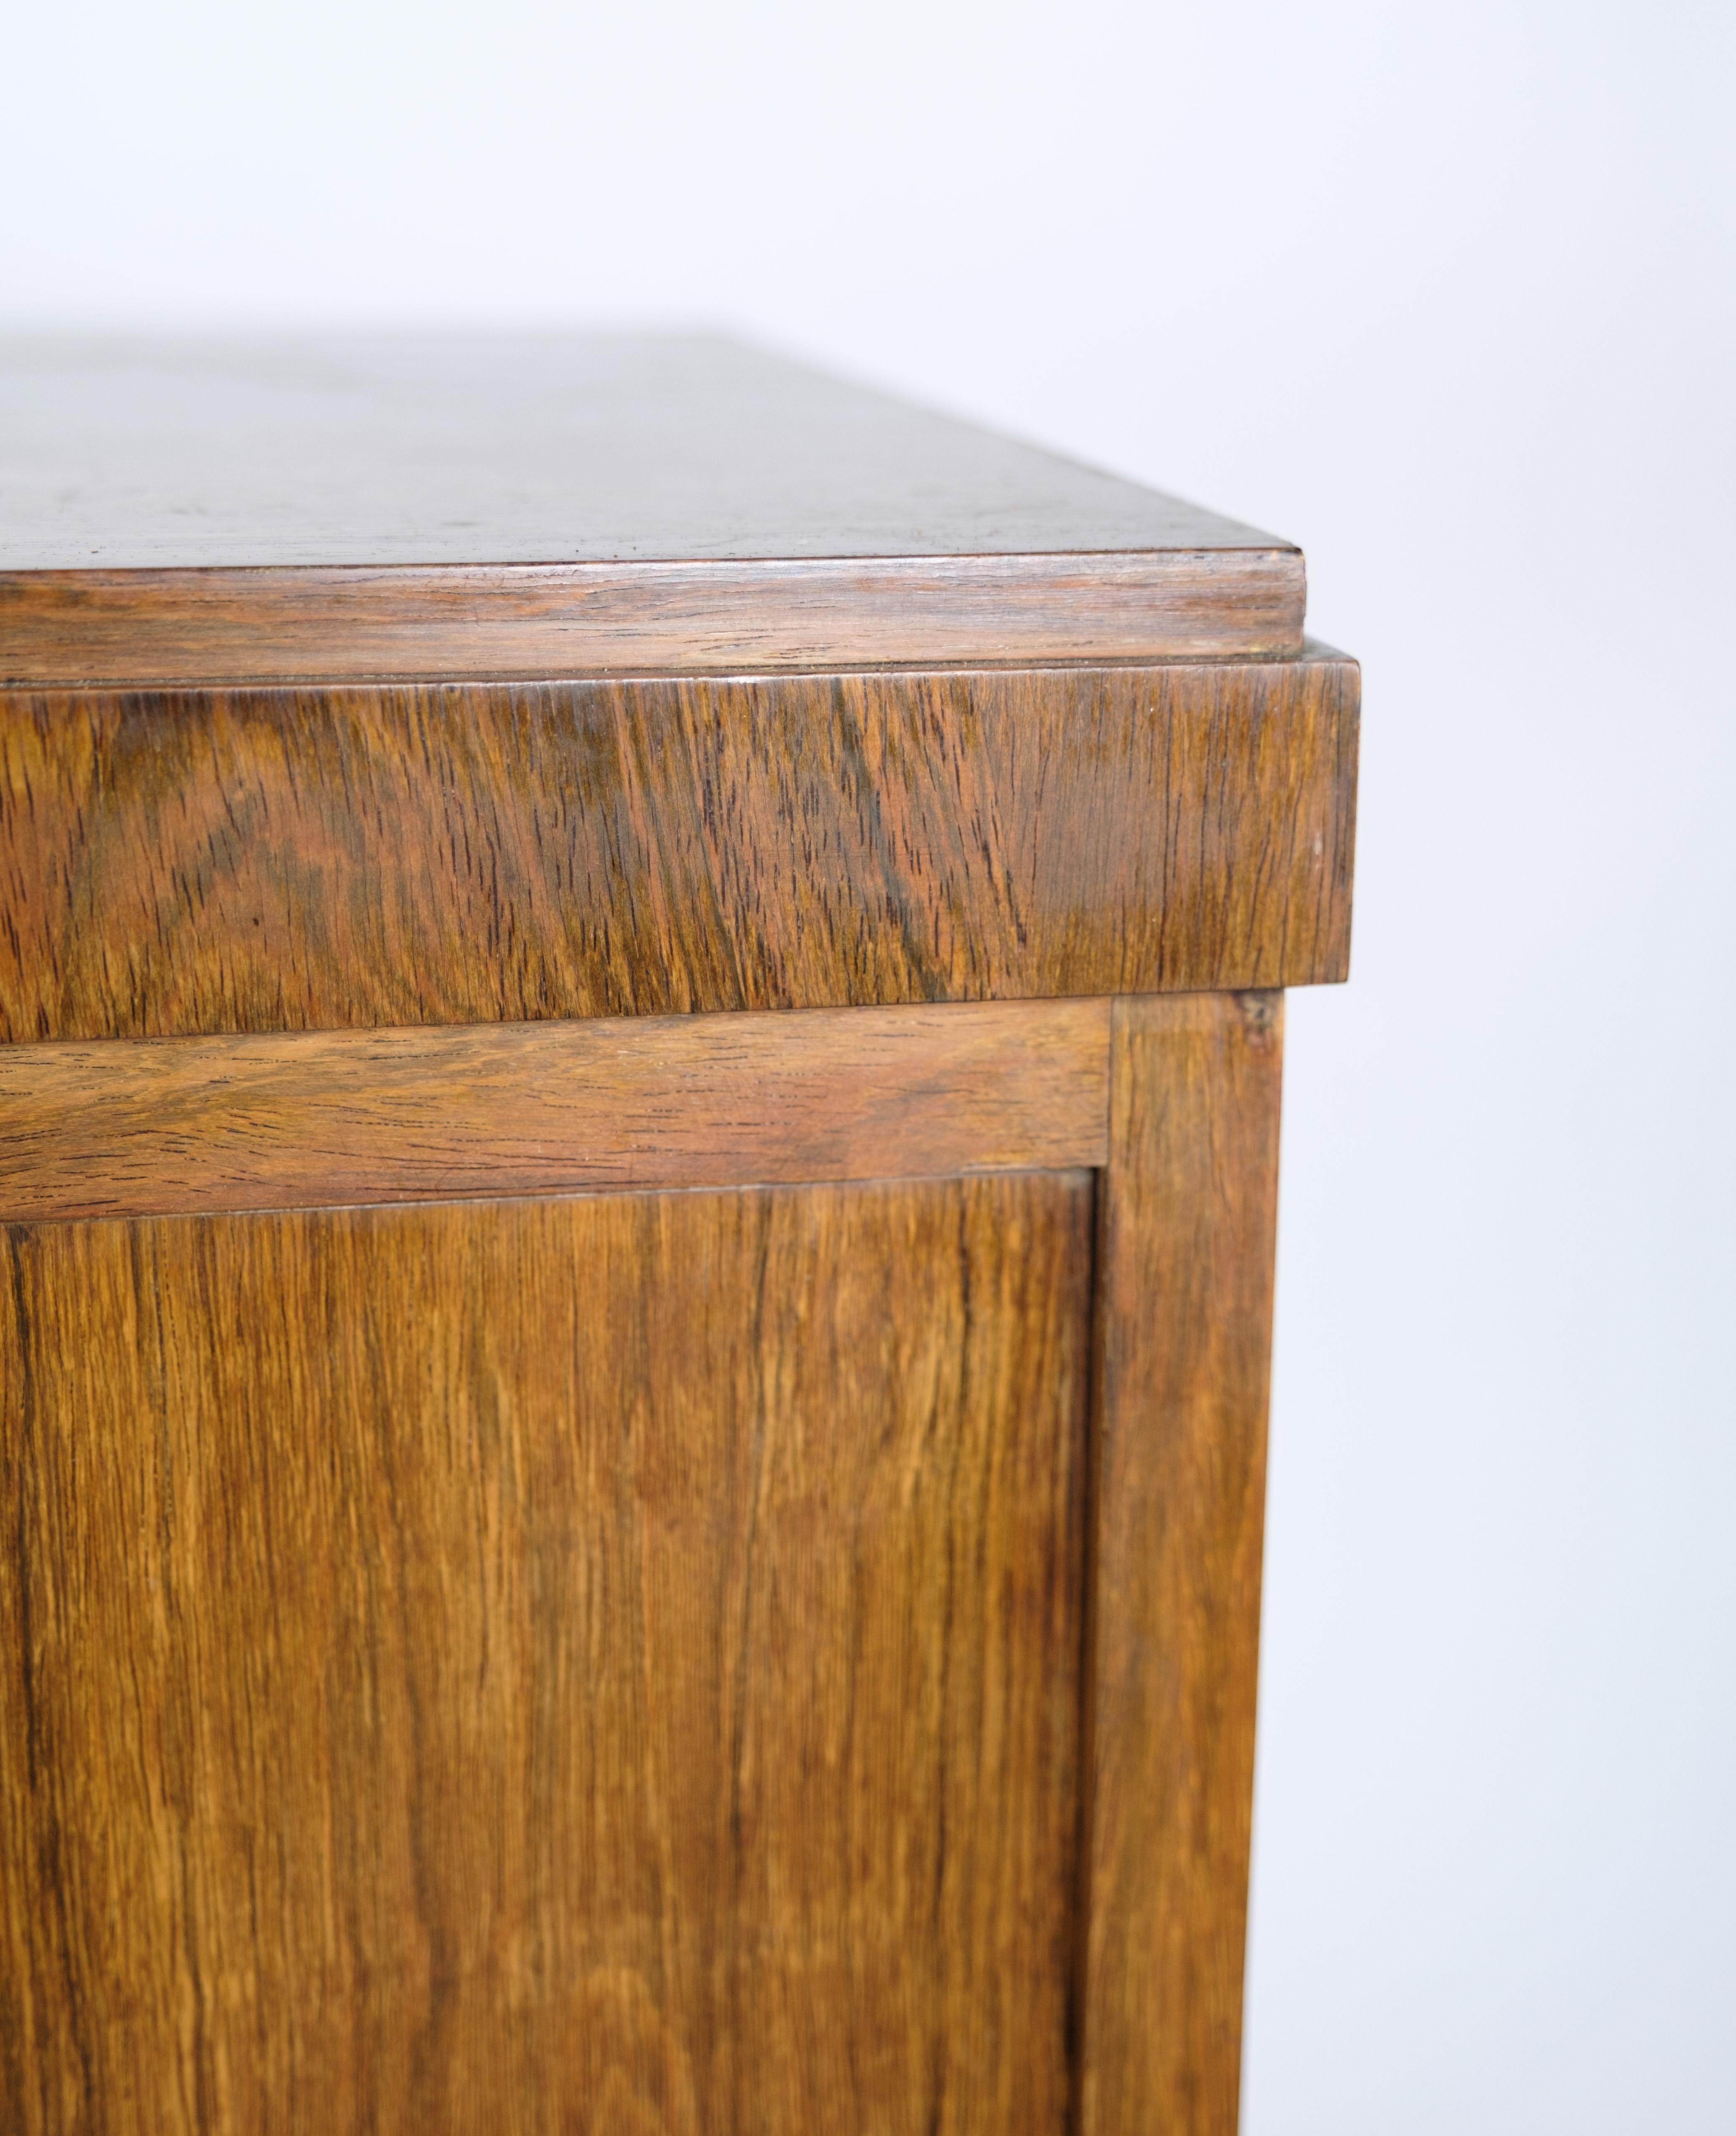 Niedriges Sideboard aus Palisanderholz mit Türen und 4 Schubladen aus Messing, dänische Tischlermeisterarbeit aus den 1950er Jahren.
Abmessungen in cm: H:84 B:161 T:41